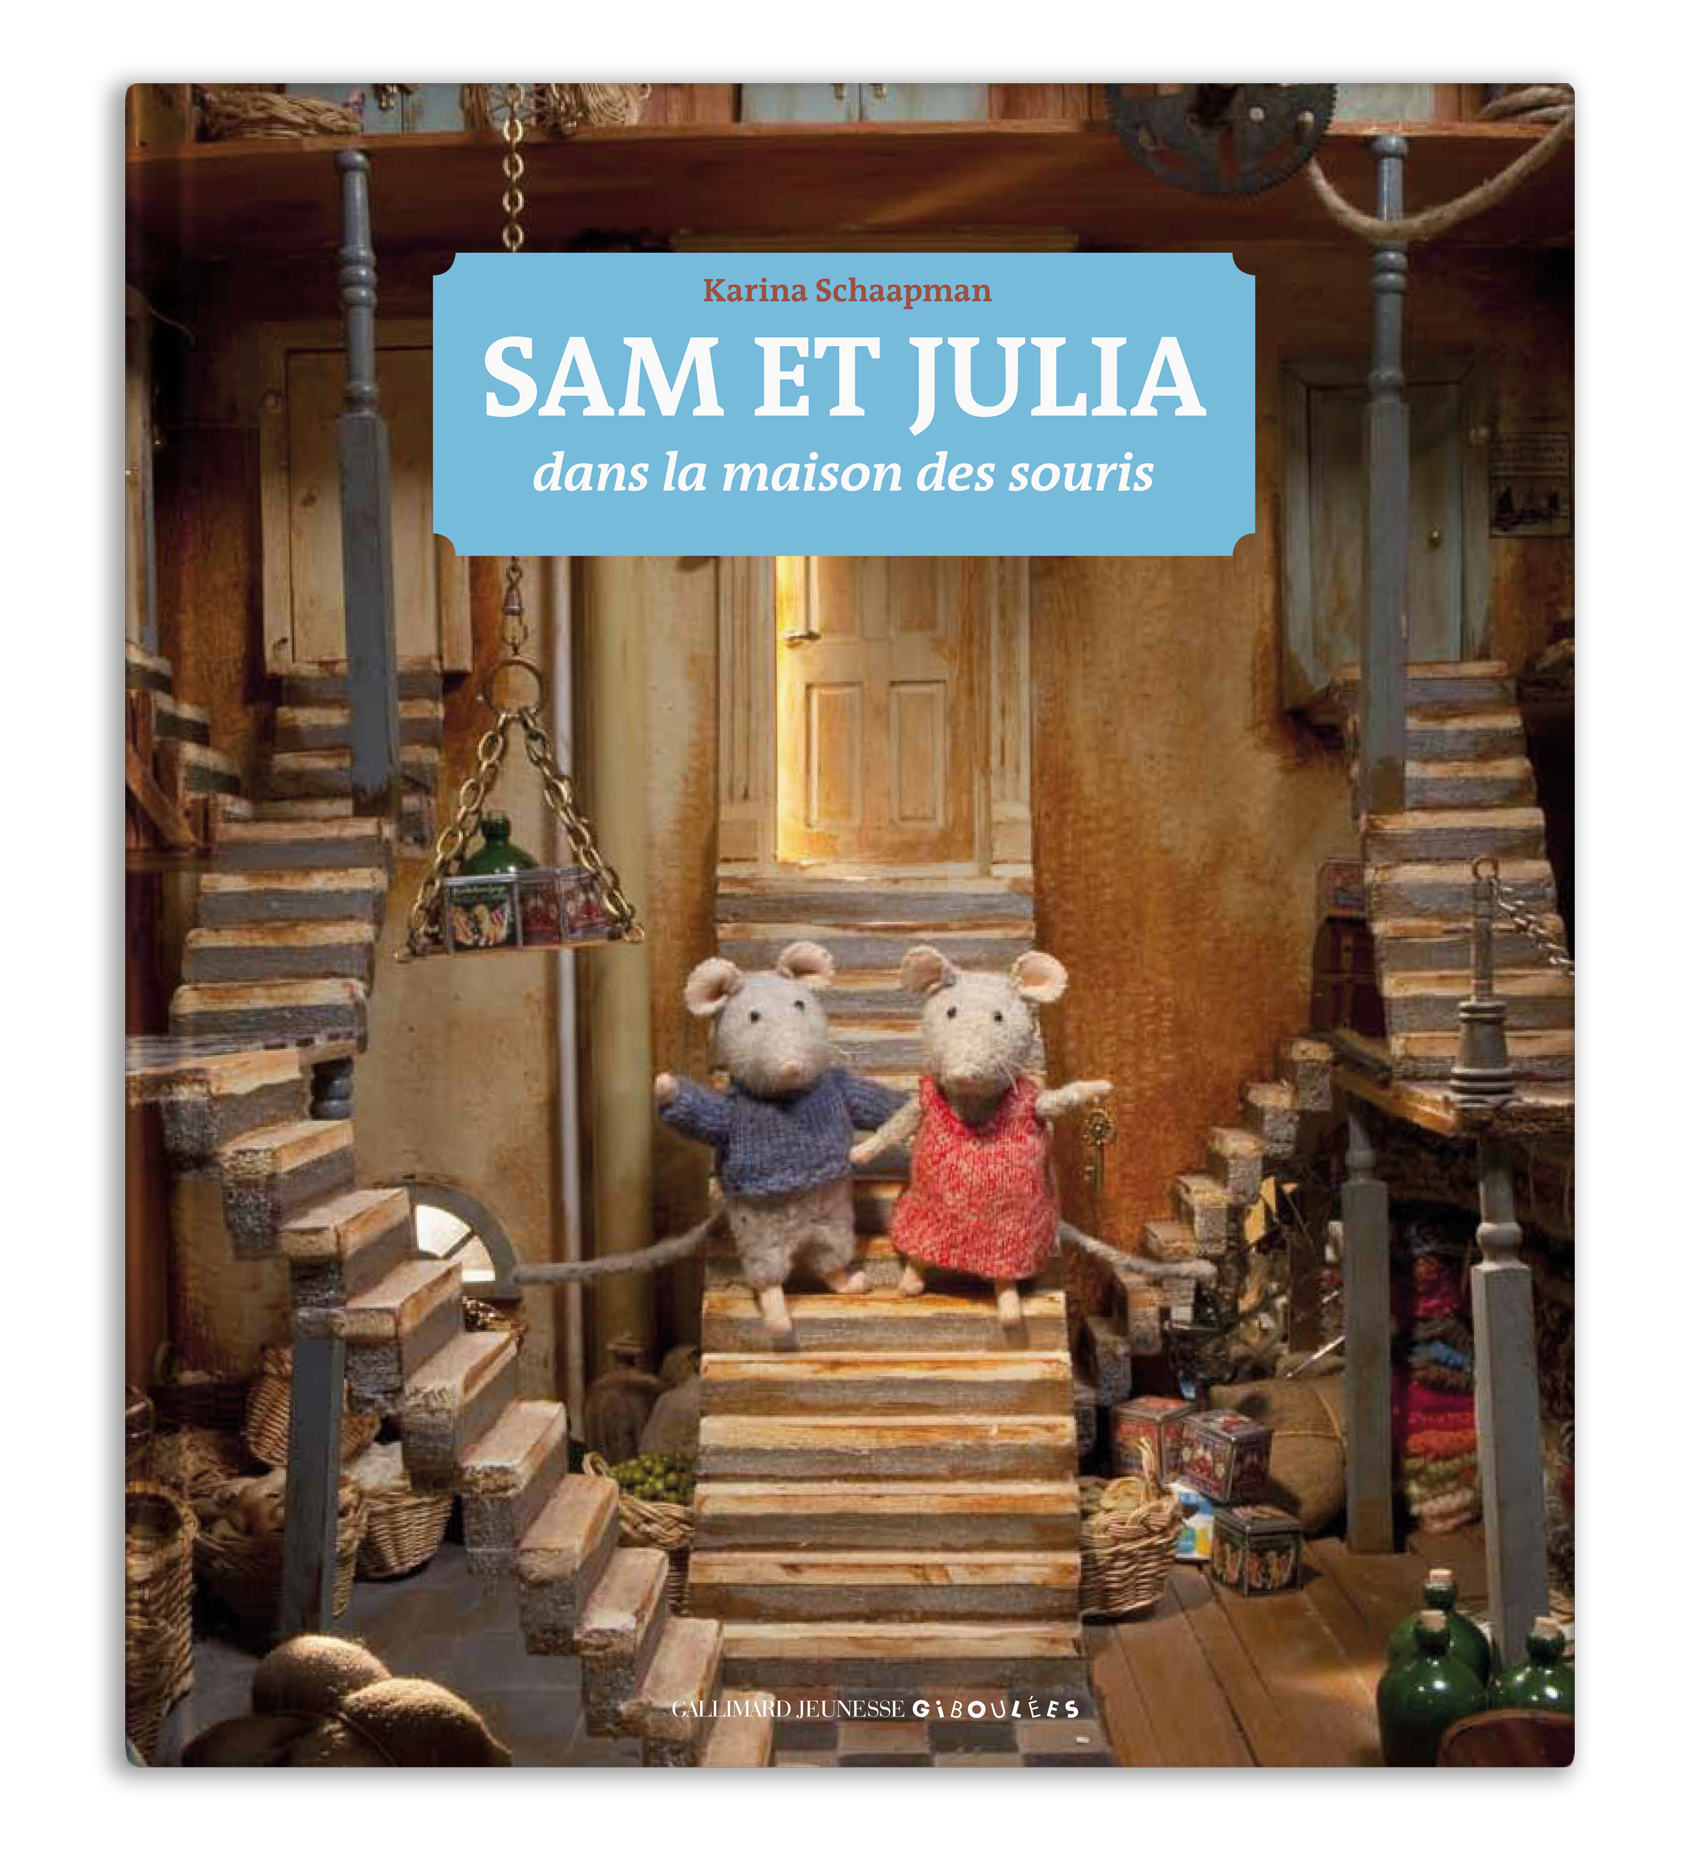 La Maison des Souris - Sam et Julia